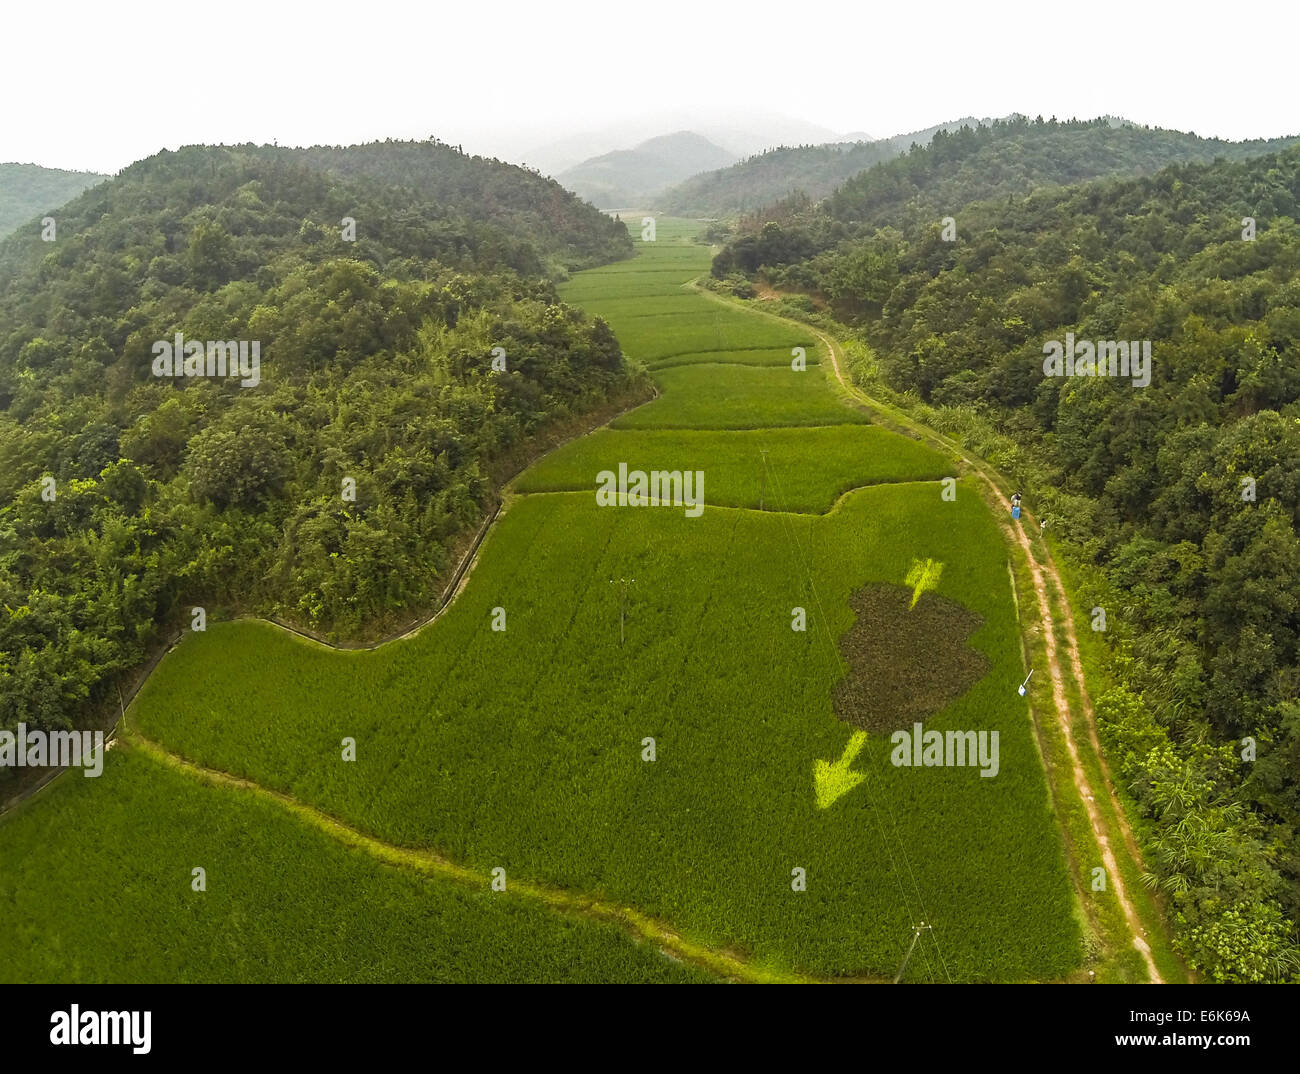 (140826) --HANGZHOU, le 26 août 2014 (Xinhua) -- photo aérienne prise le 26 août 2014 montre un champ de riz colorés comic appelé 'Cupid's arrow' dans une ferme écologique dans la zone de Hangzhou Yuhang, capitale de la Chine de l'est la province de Zhejiang. (Xinhua/Xu Yu) (HPJ) Banque D'Images